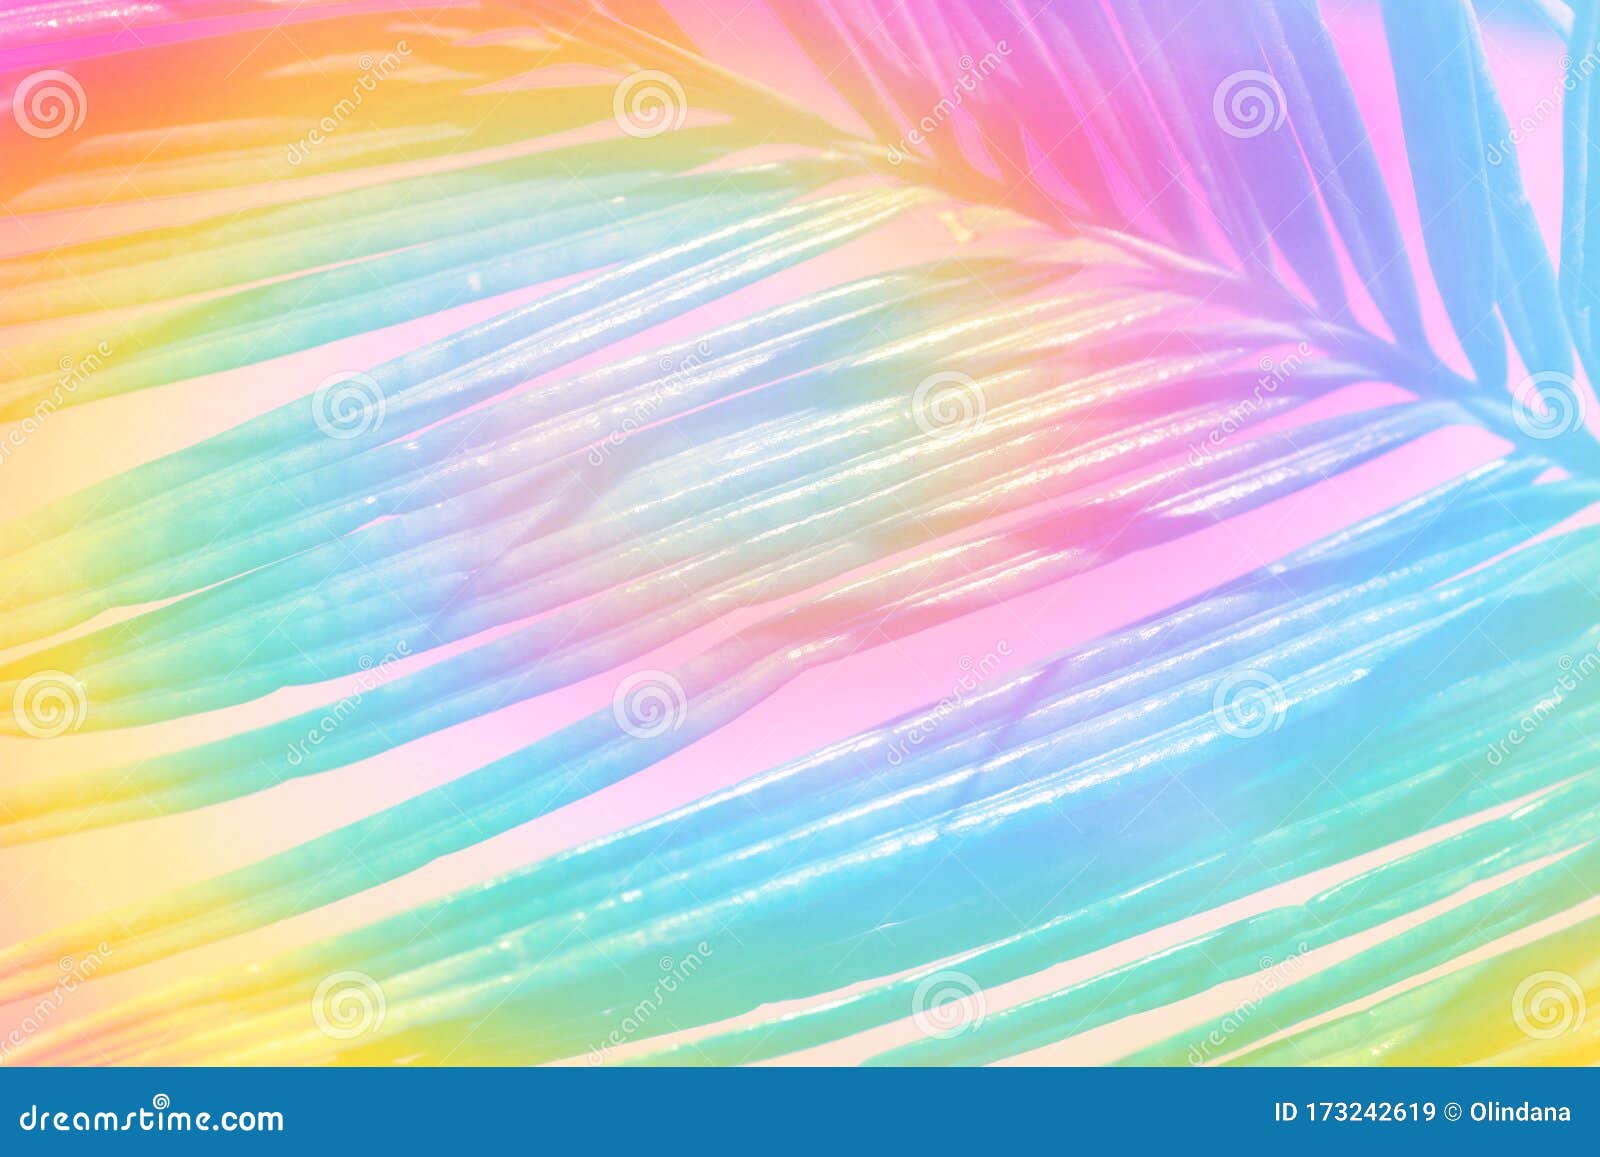 棕叶霓虹彩色热带自然植物背景条纹图案库存图片 图片包括有夏天 颜色 几何 淡色 掌上型计算机